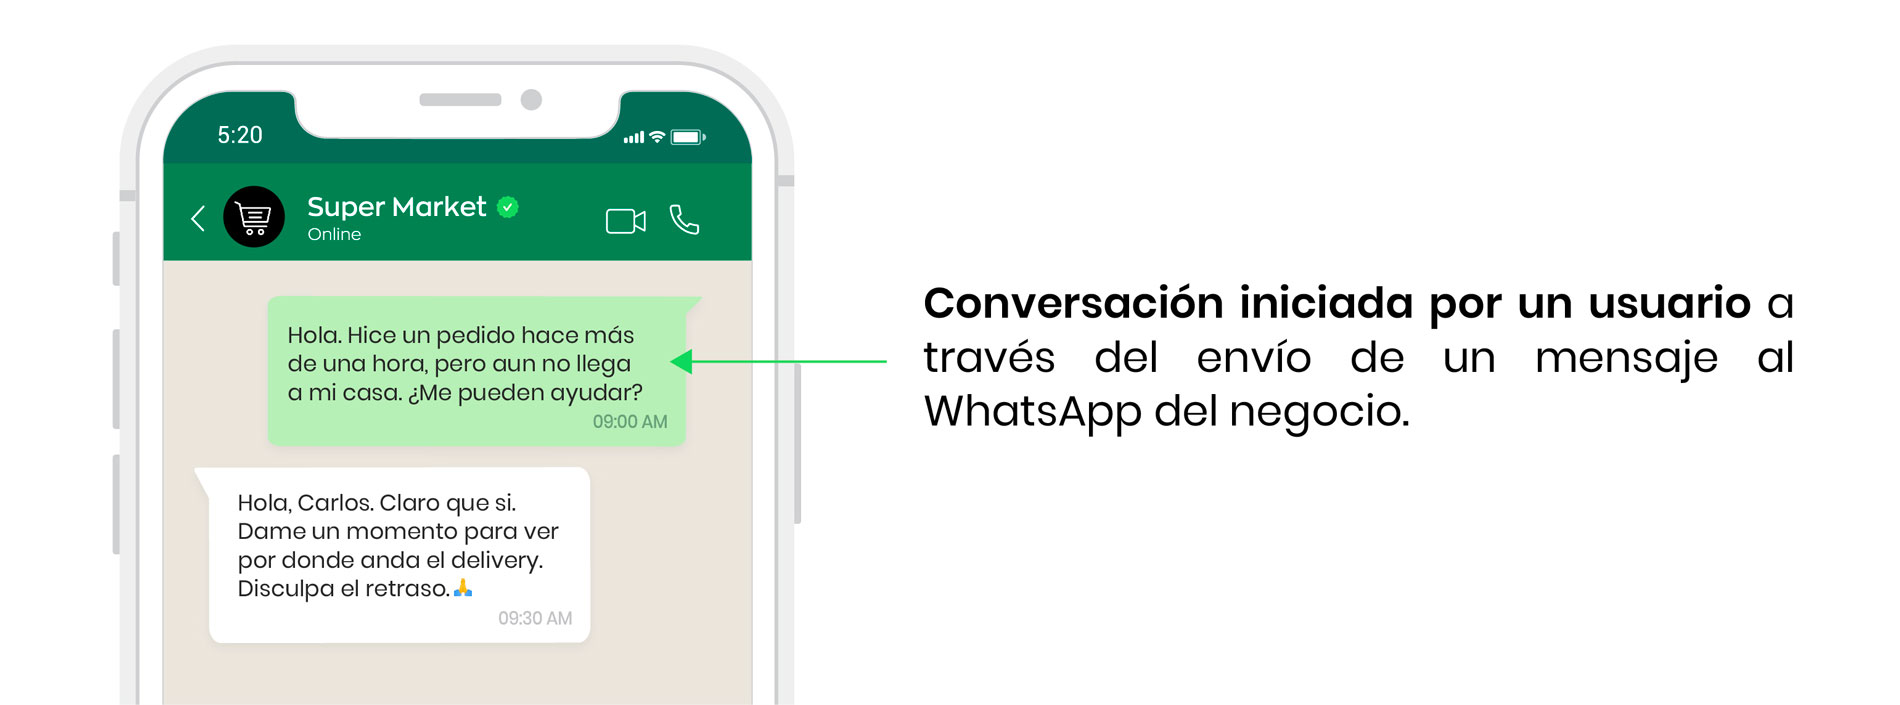 Conversacion iniciada por el usuario en WhatsApp Business API